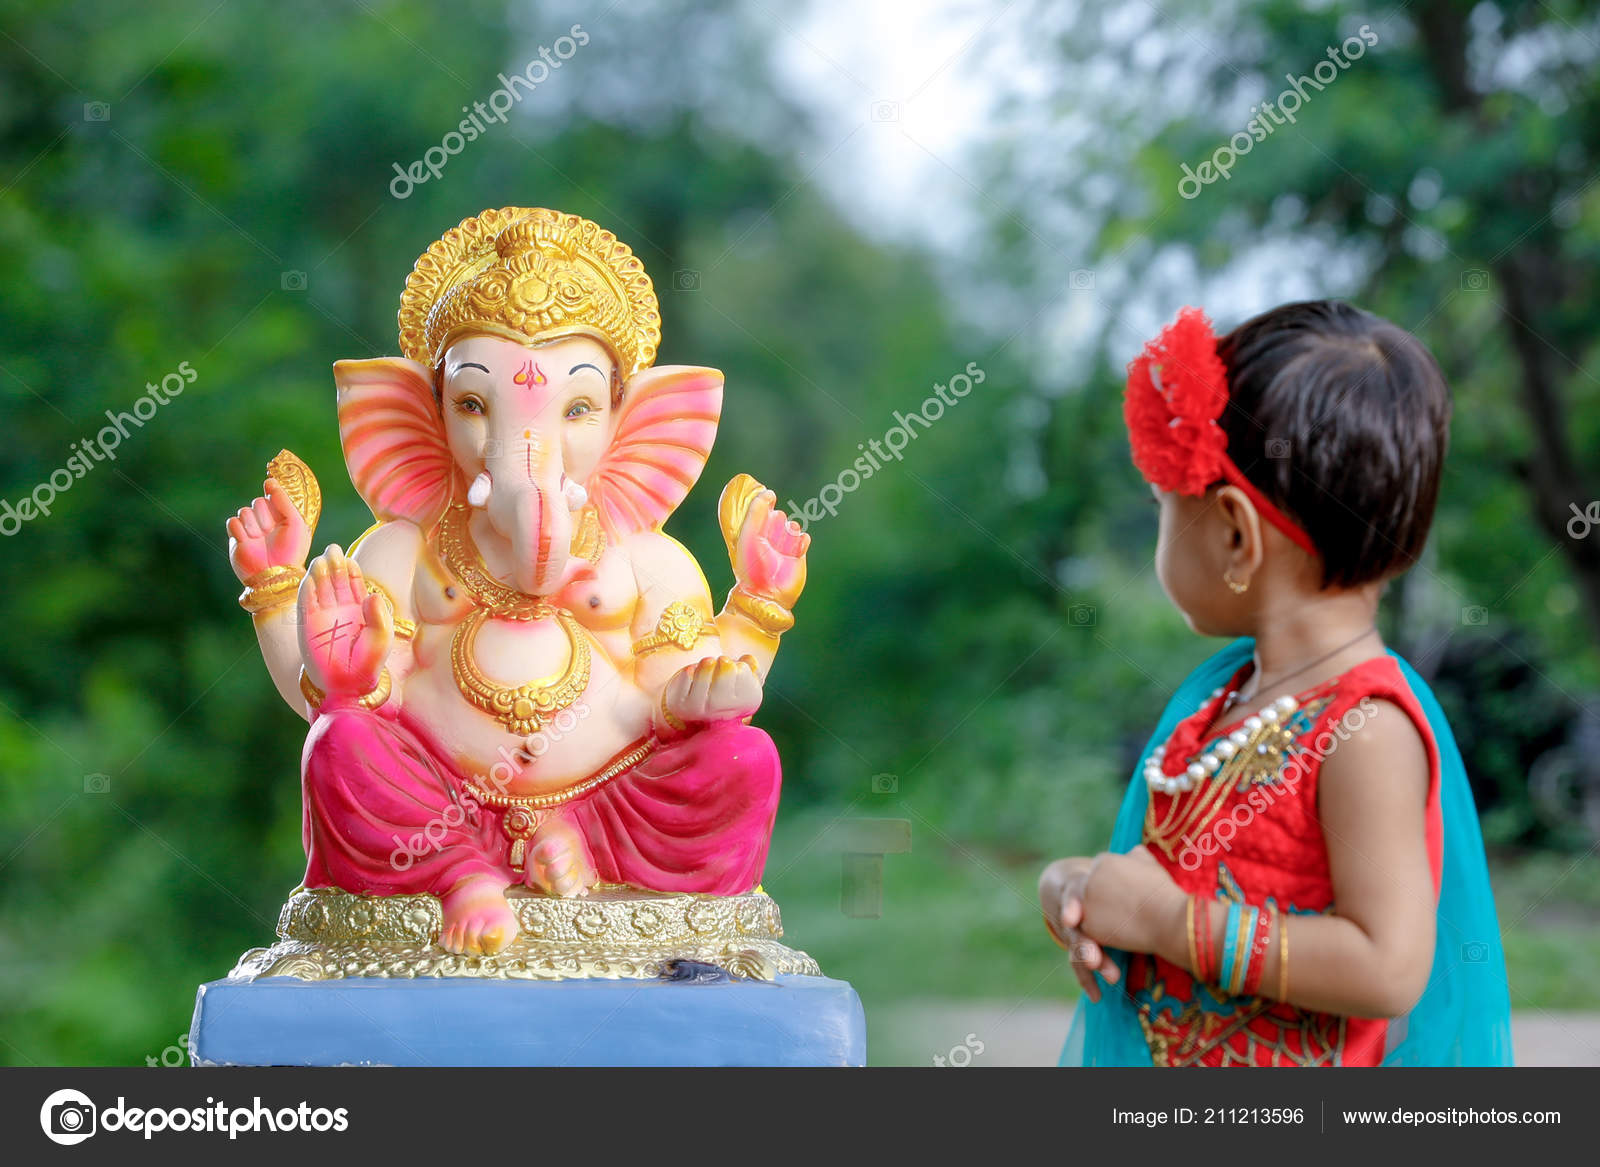 Little Indian Girl Child Lord Ganesha Praying Indian Ganesh ...